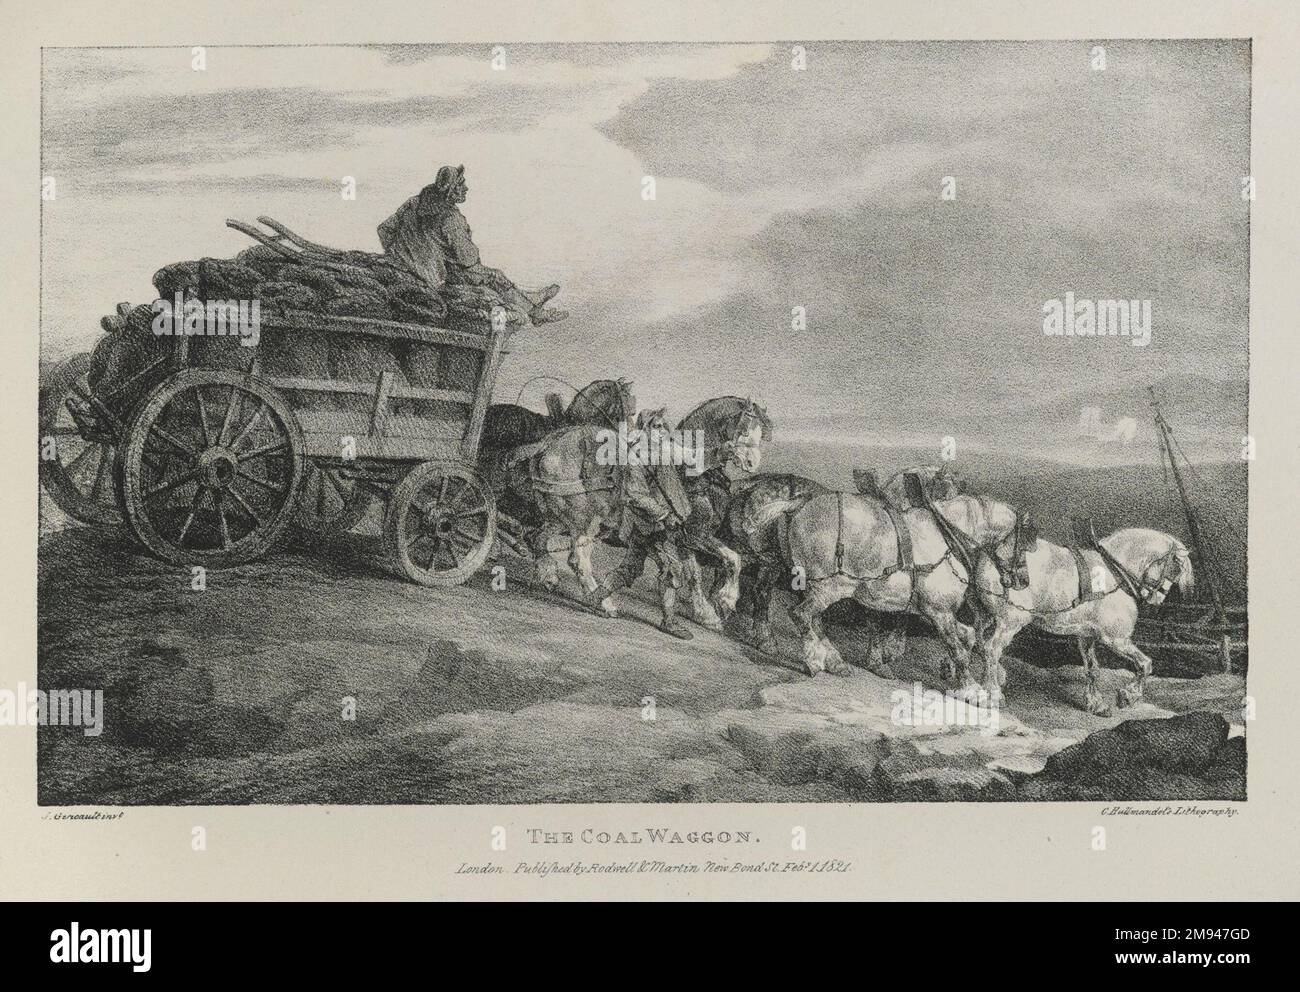 Coal Waggon Théodore Géricault (Frankreich, 1791-1829). , 1821. Lithografie auf gewebtem Papier, 7 3/4 x 12 1/4 Zoll (19,7 x 31,1 cm). Der Coal Waggon ist das zehnte Bild einer Reihe von Lithografien mit verschiedenen Themen aus Life und on Stone, die Théodore Géricault in den 1820er Jahren in England produzierte. Es ist eines von mehreren, die sich auf Pferde konzentrieren, eines der Lieblingsthemen von Géricault. Als Erinnerung an die rasanten kulturellen Veränderungen der Epoche zeigt der Druck ein Team von Zugpferden, Symbole einer traditionellen landwirtschaftlichen Lebensweise, die eine Ladung Kohle ziehen, das Material, das die industrielle Revolution antreibt. Arbeiten Stockfoto